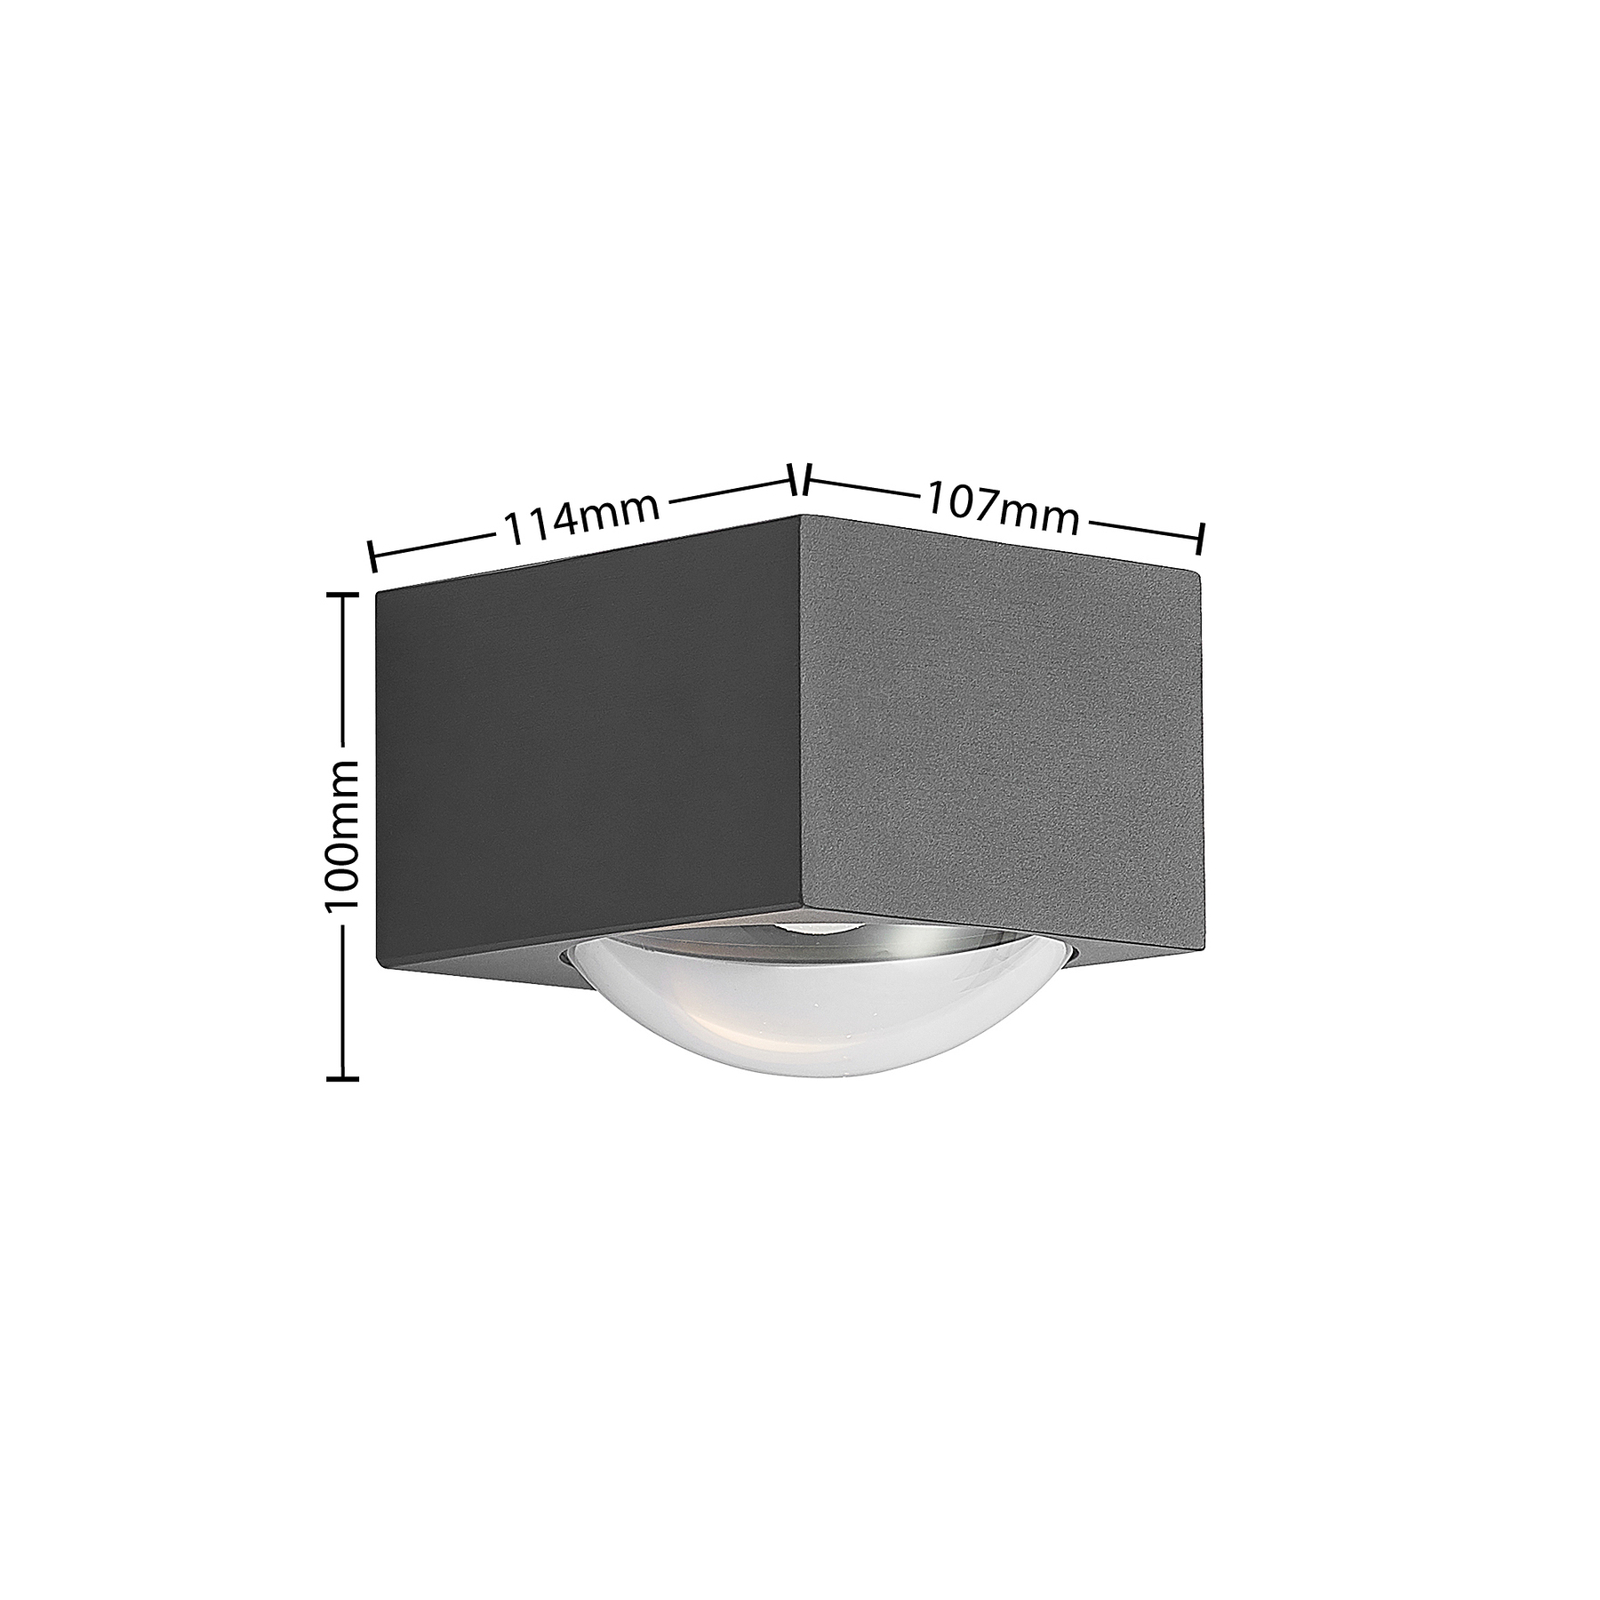 Lucande Almos aplique LED exterior, angular, 1 luz